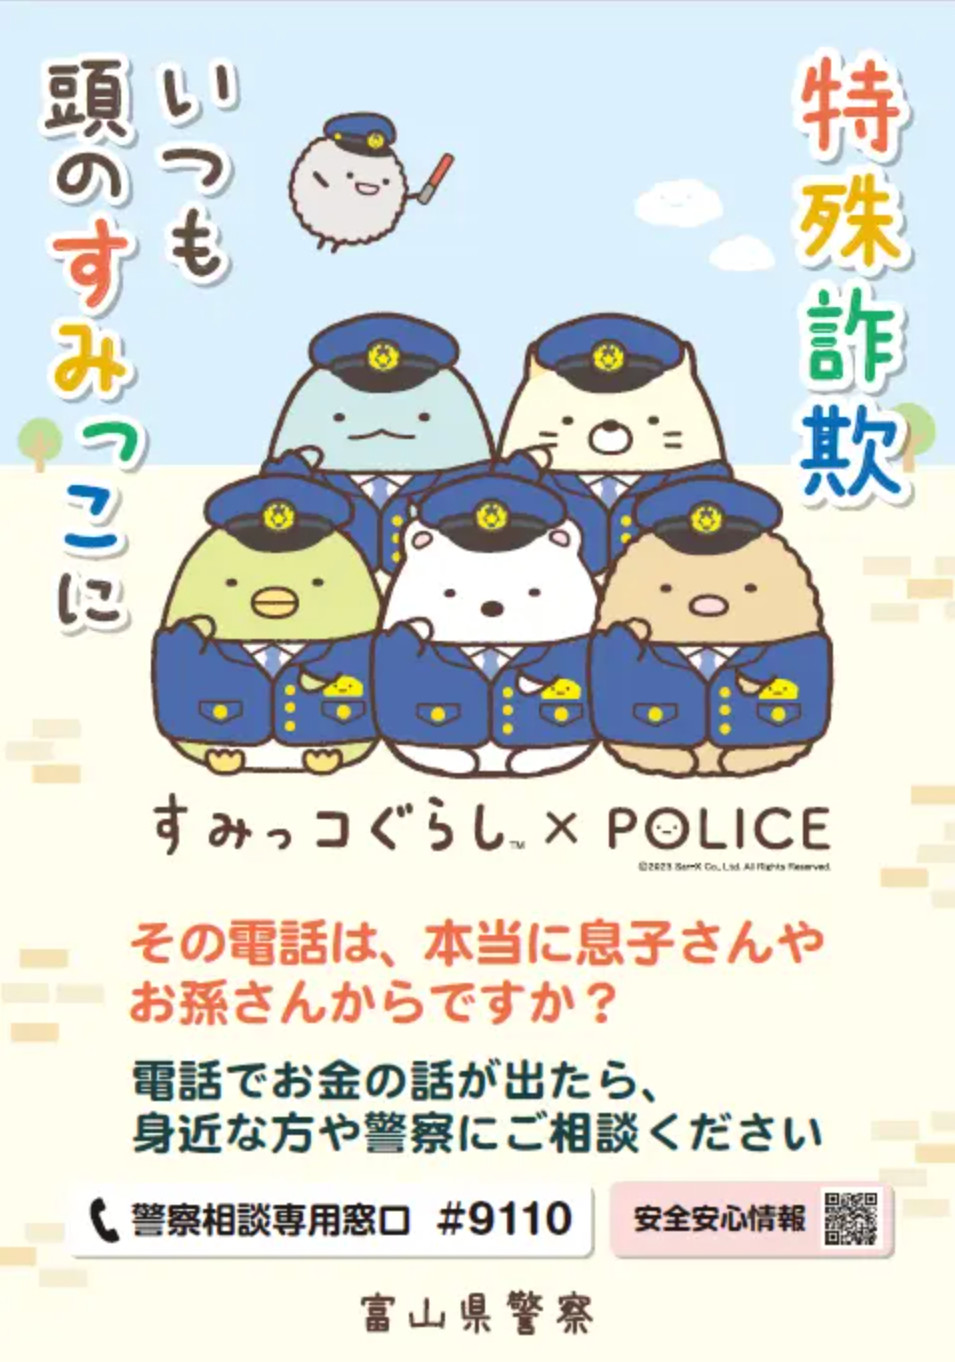 「すみっコぐらし」を起用した特殊詐欺の被害防止を啓発する富山県警のポスター